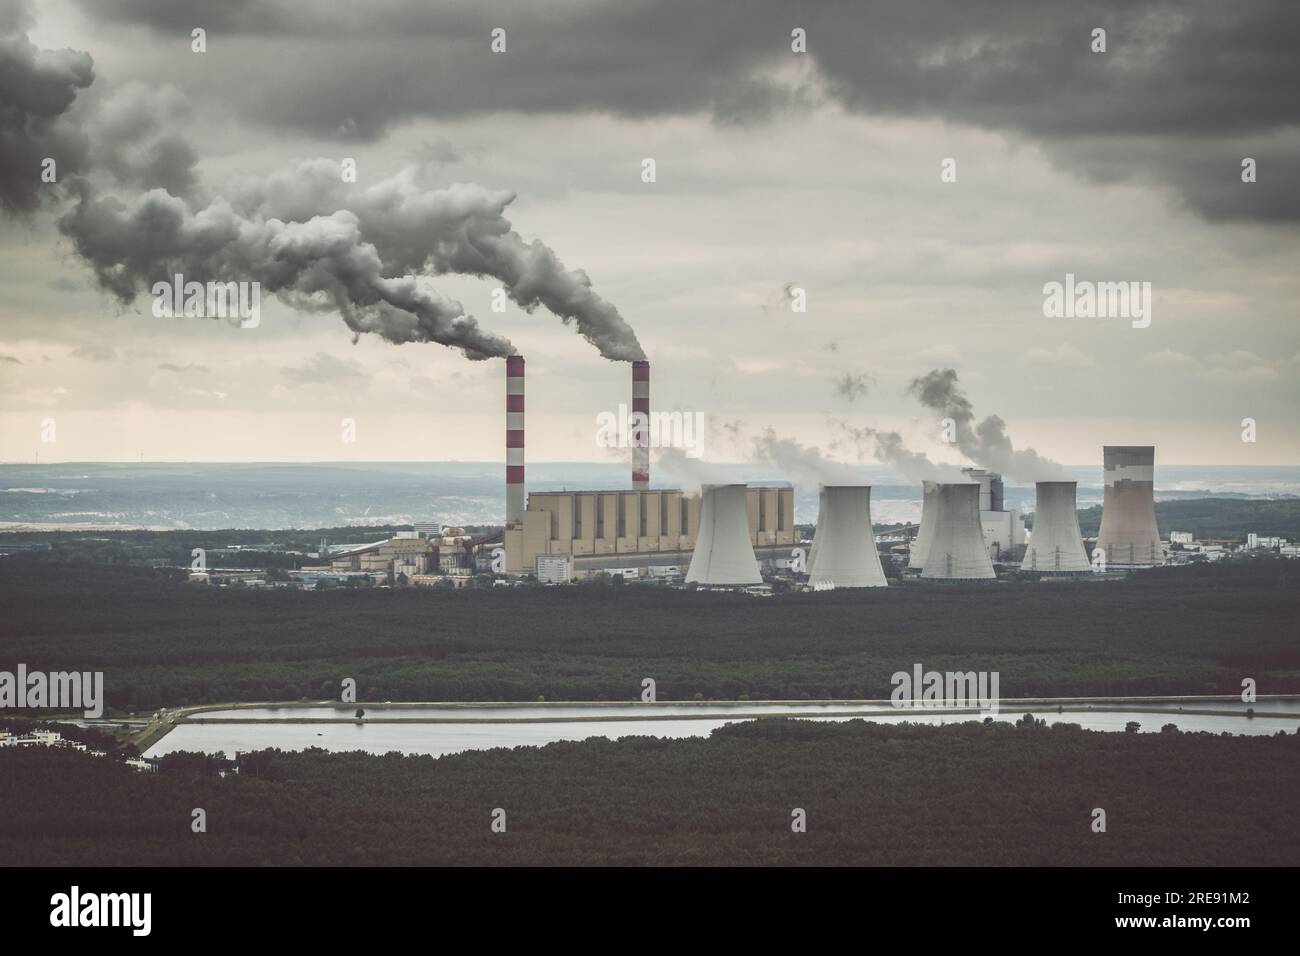 Aus der Vogelperspektive: Kraftwerk, Rauch aus Schornsteinen und Kohlebergwerk in Belchatow unter launischem, wolkigen Himmel, Polen Stockfoto